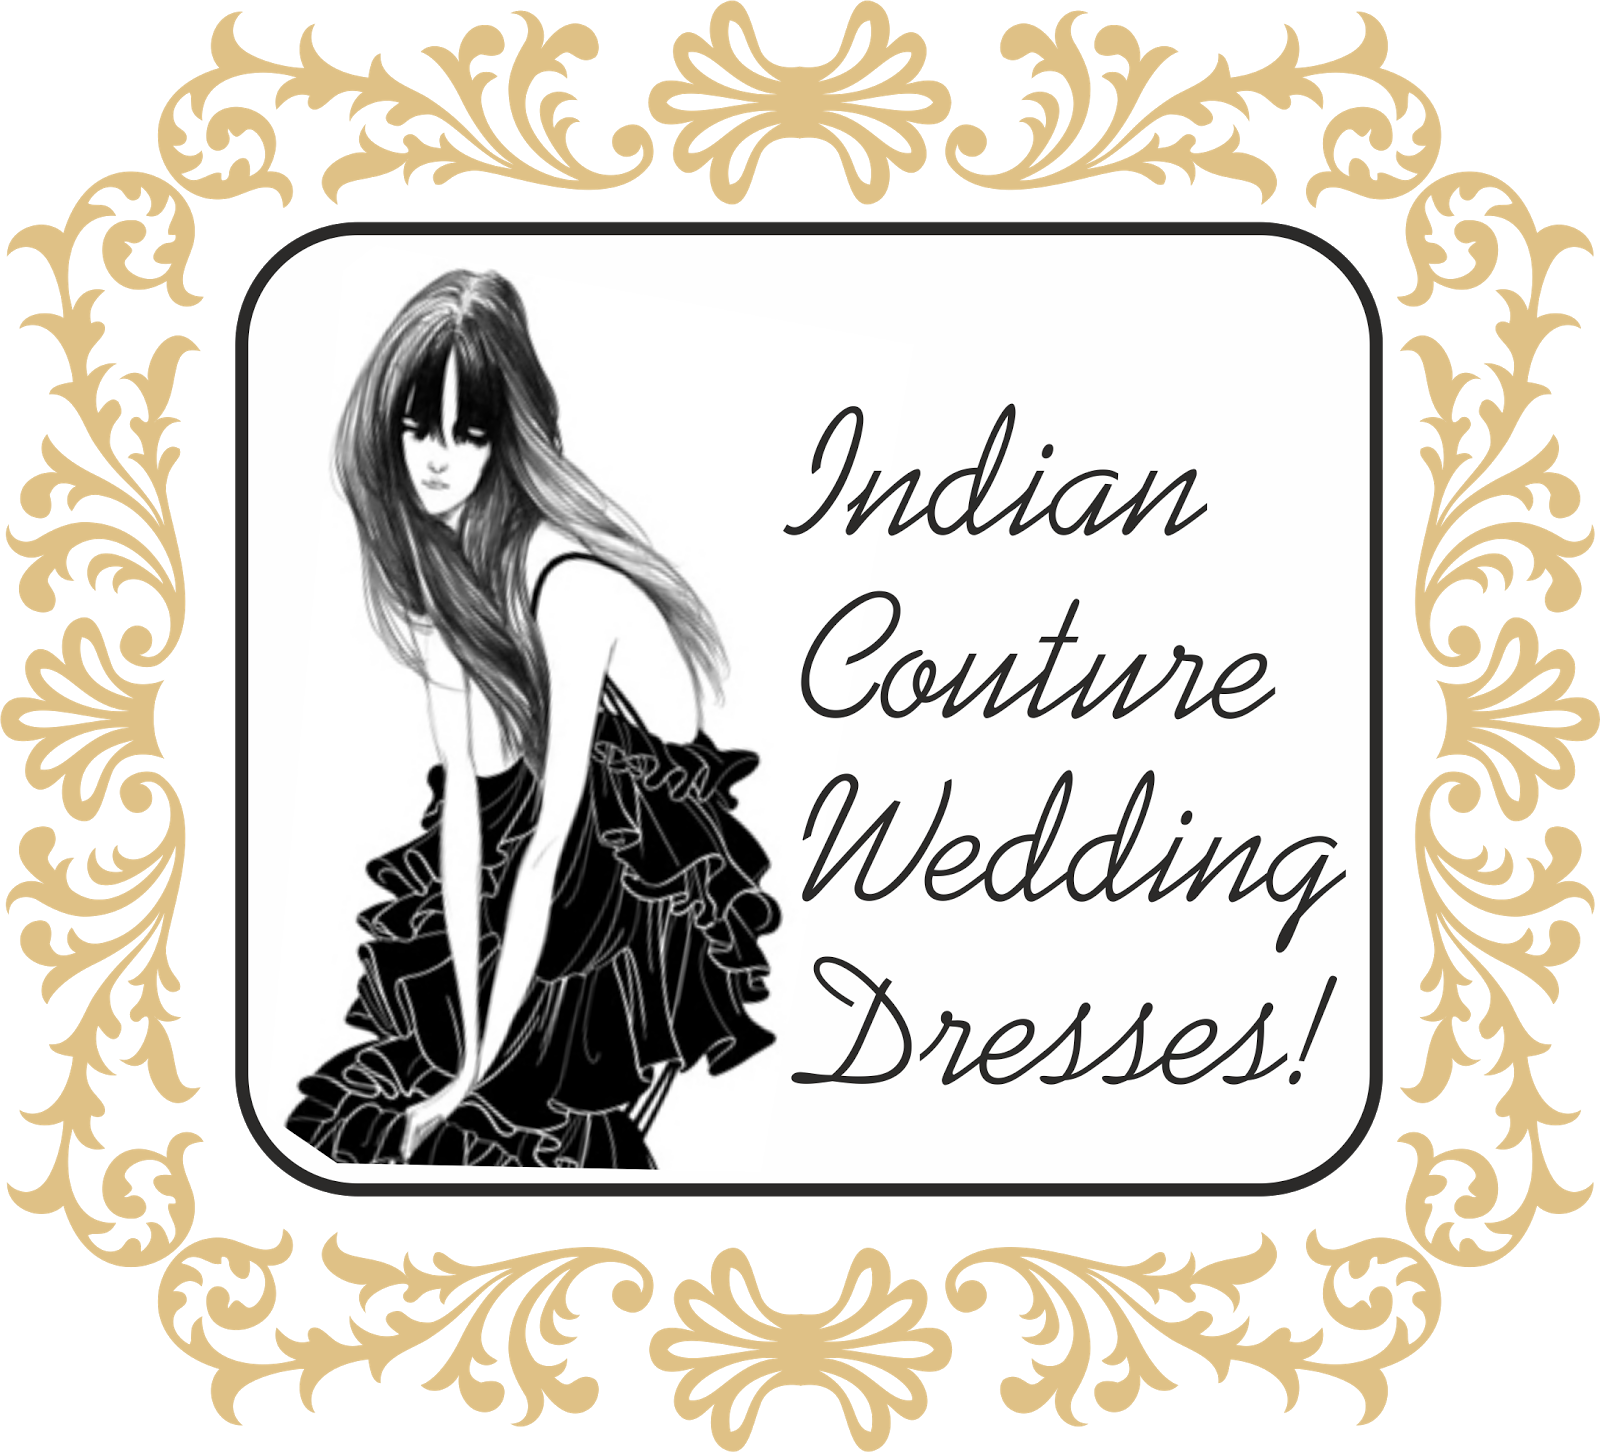 for serious fashion aficionados & discerning brides